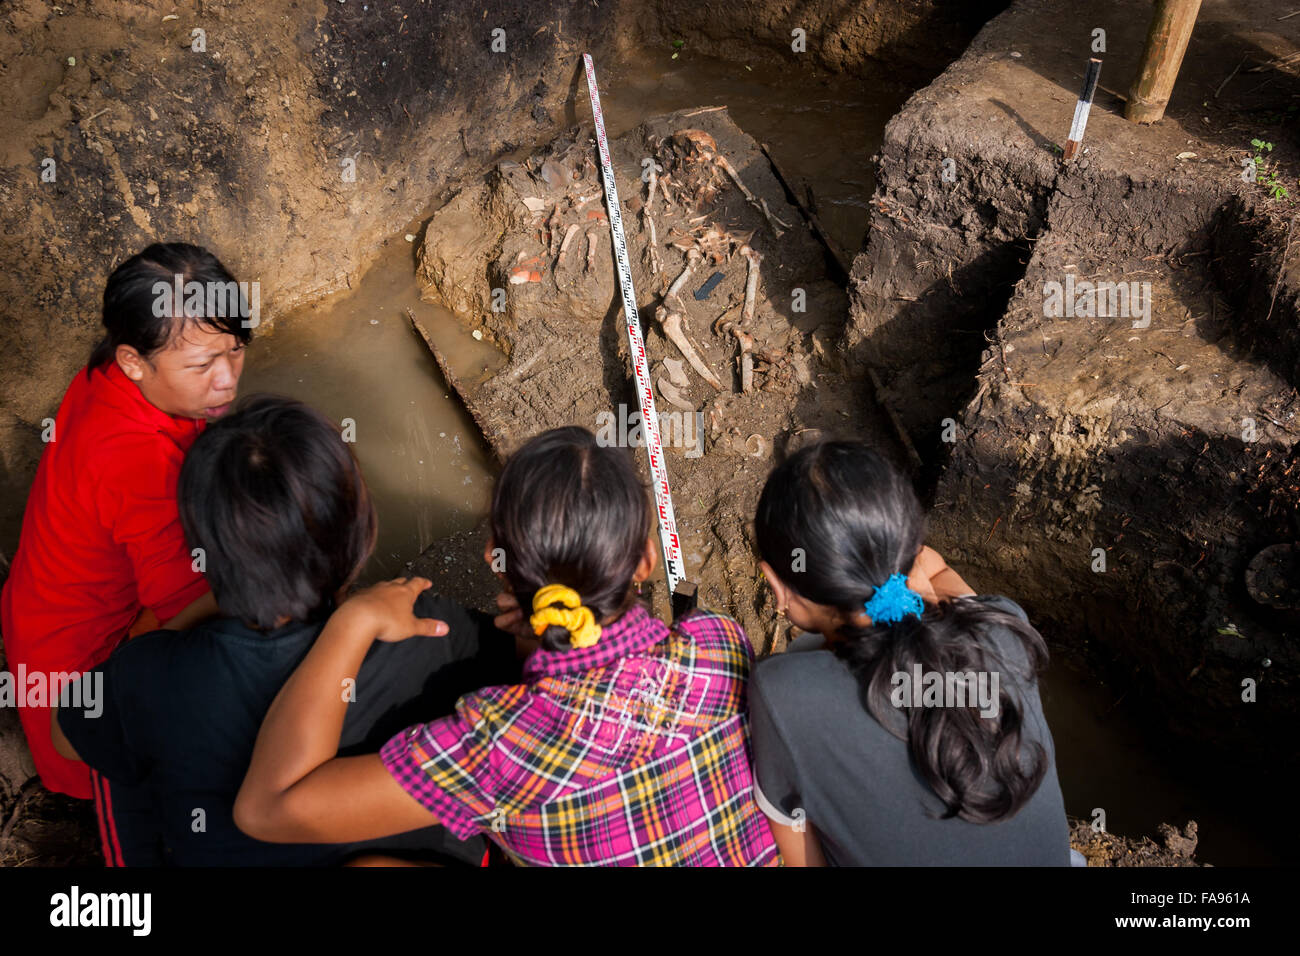 Die Dorfbewohner diskutieren an der Ausgrabungsstätte der prähistorischen Grabstätte, die von der Indonesischen Nationalen Archäologieforschung in Karawang durchgeführt wurde. Stockfoto